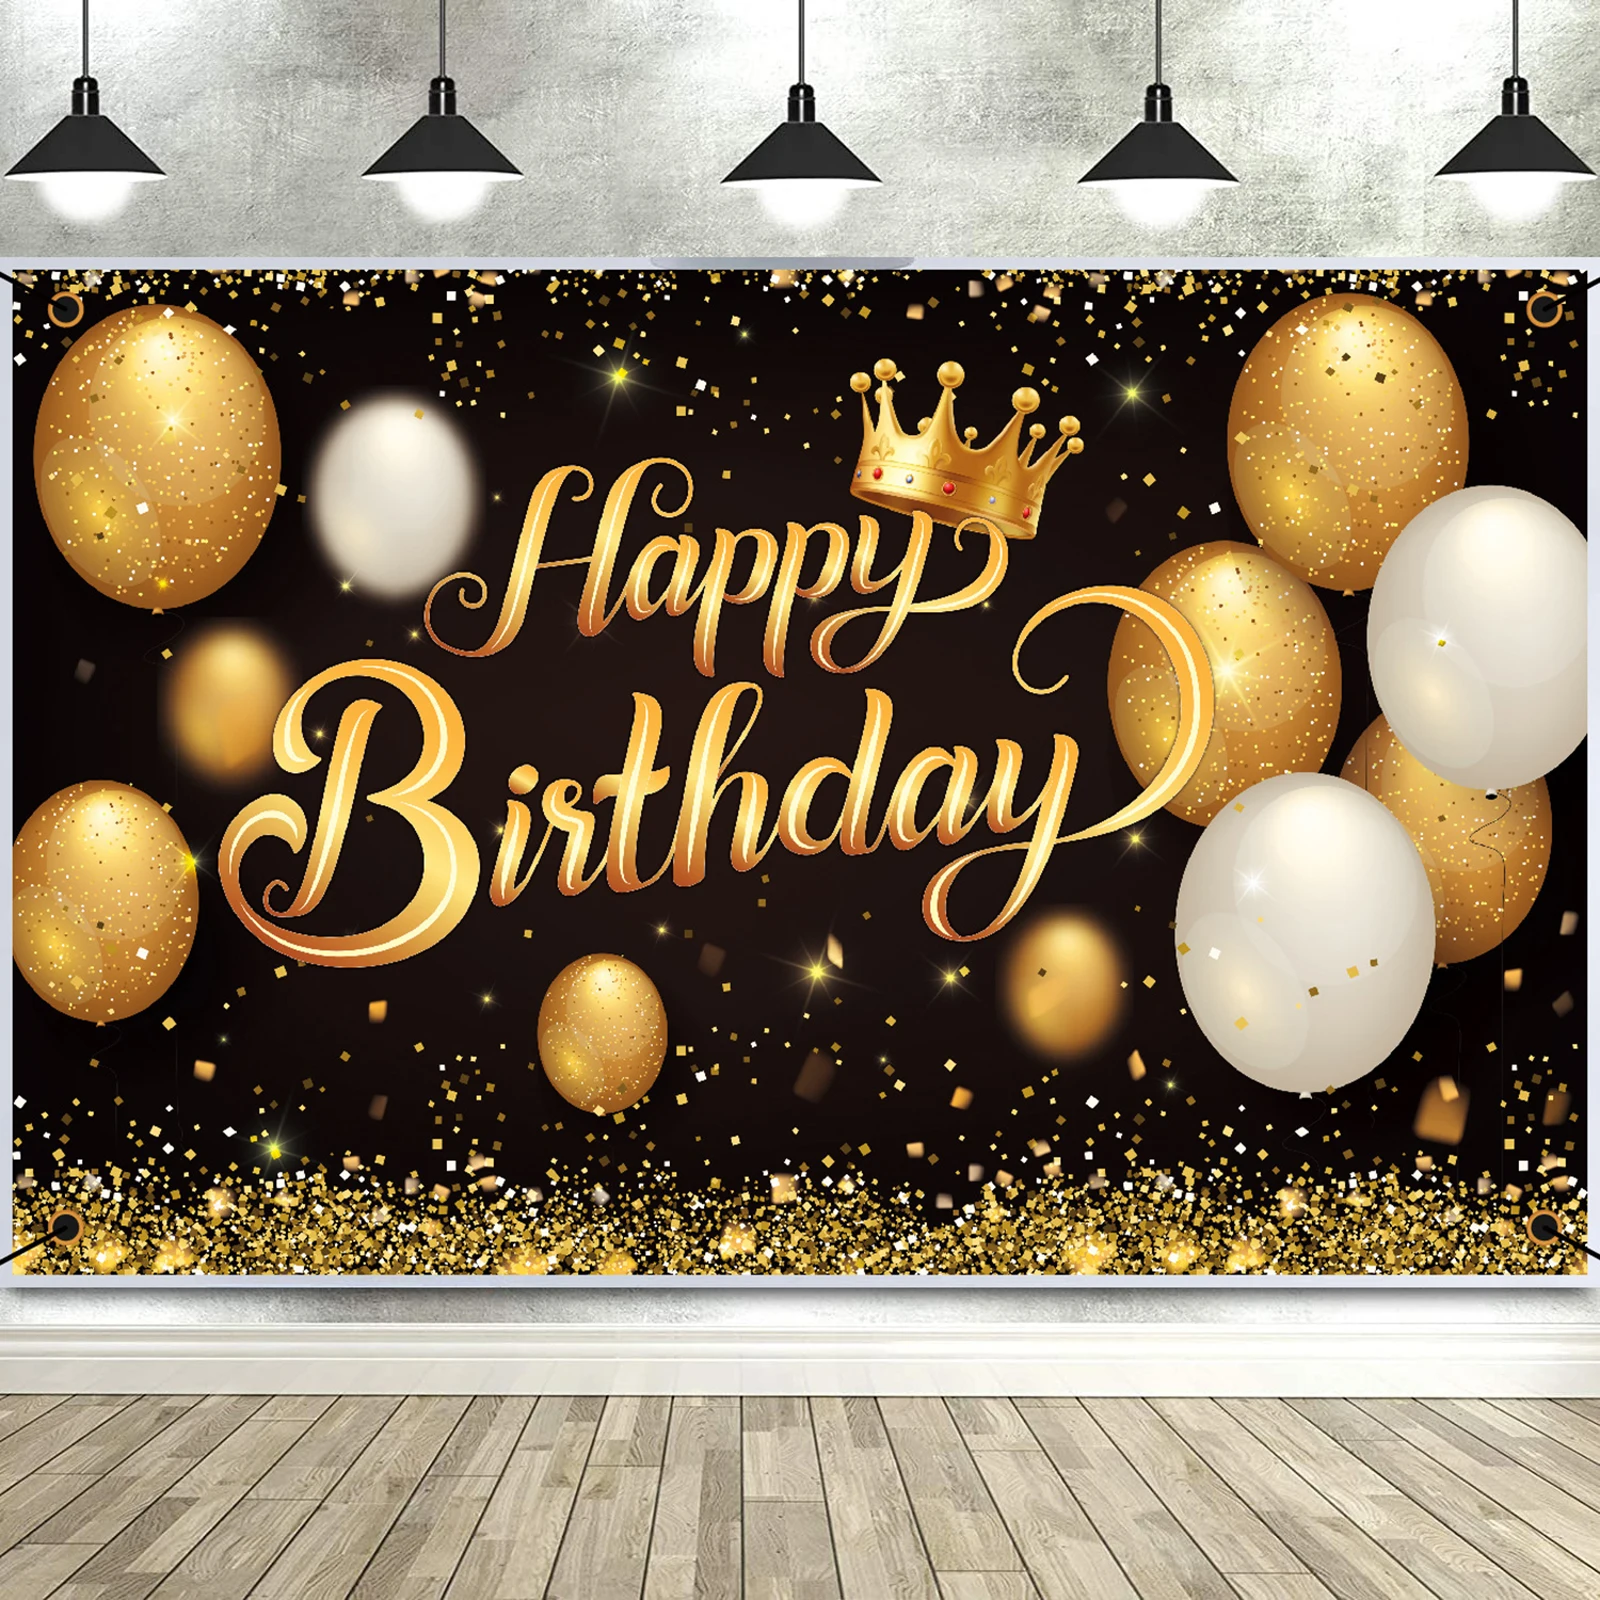 

Фон для дня рождения баннер большой черный золотой шар звезда фейерверк Вечеринка знак плакат фотобудка фон для дня рождения вечеринки